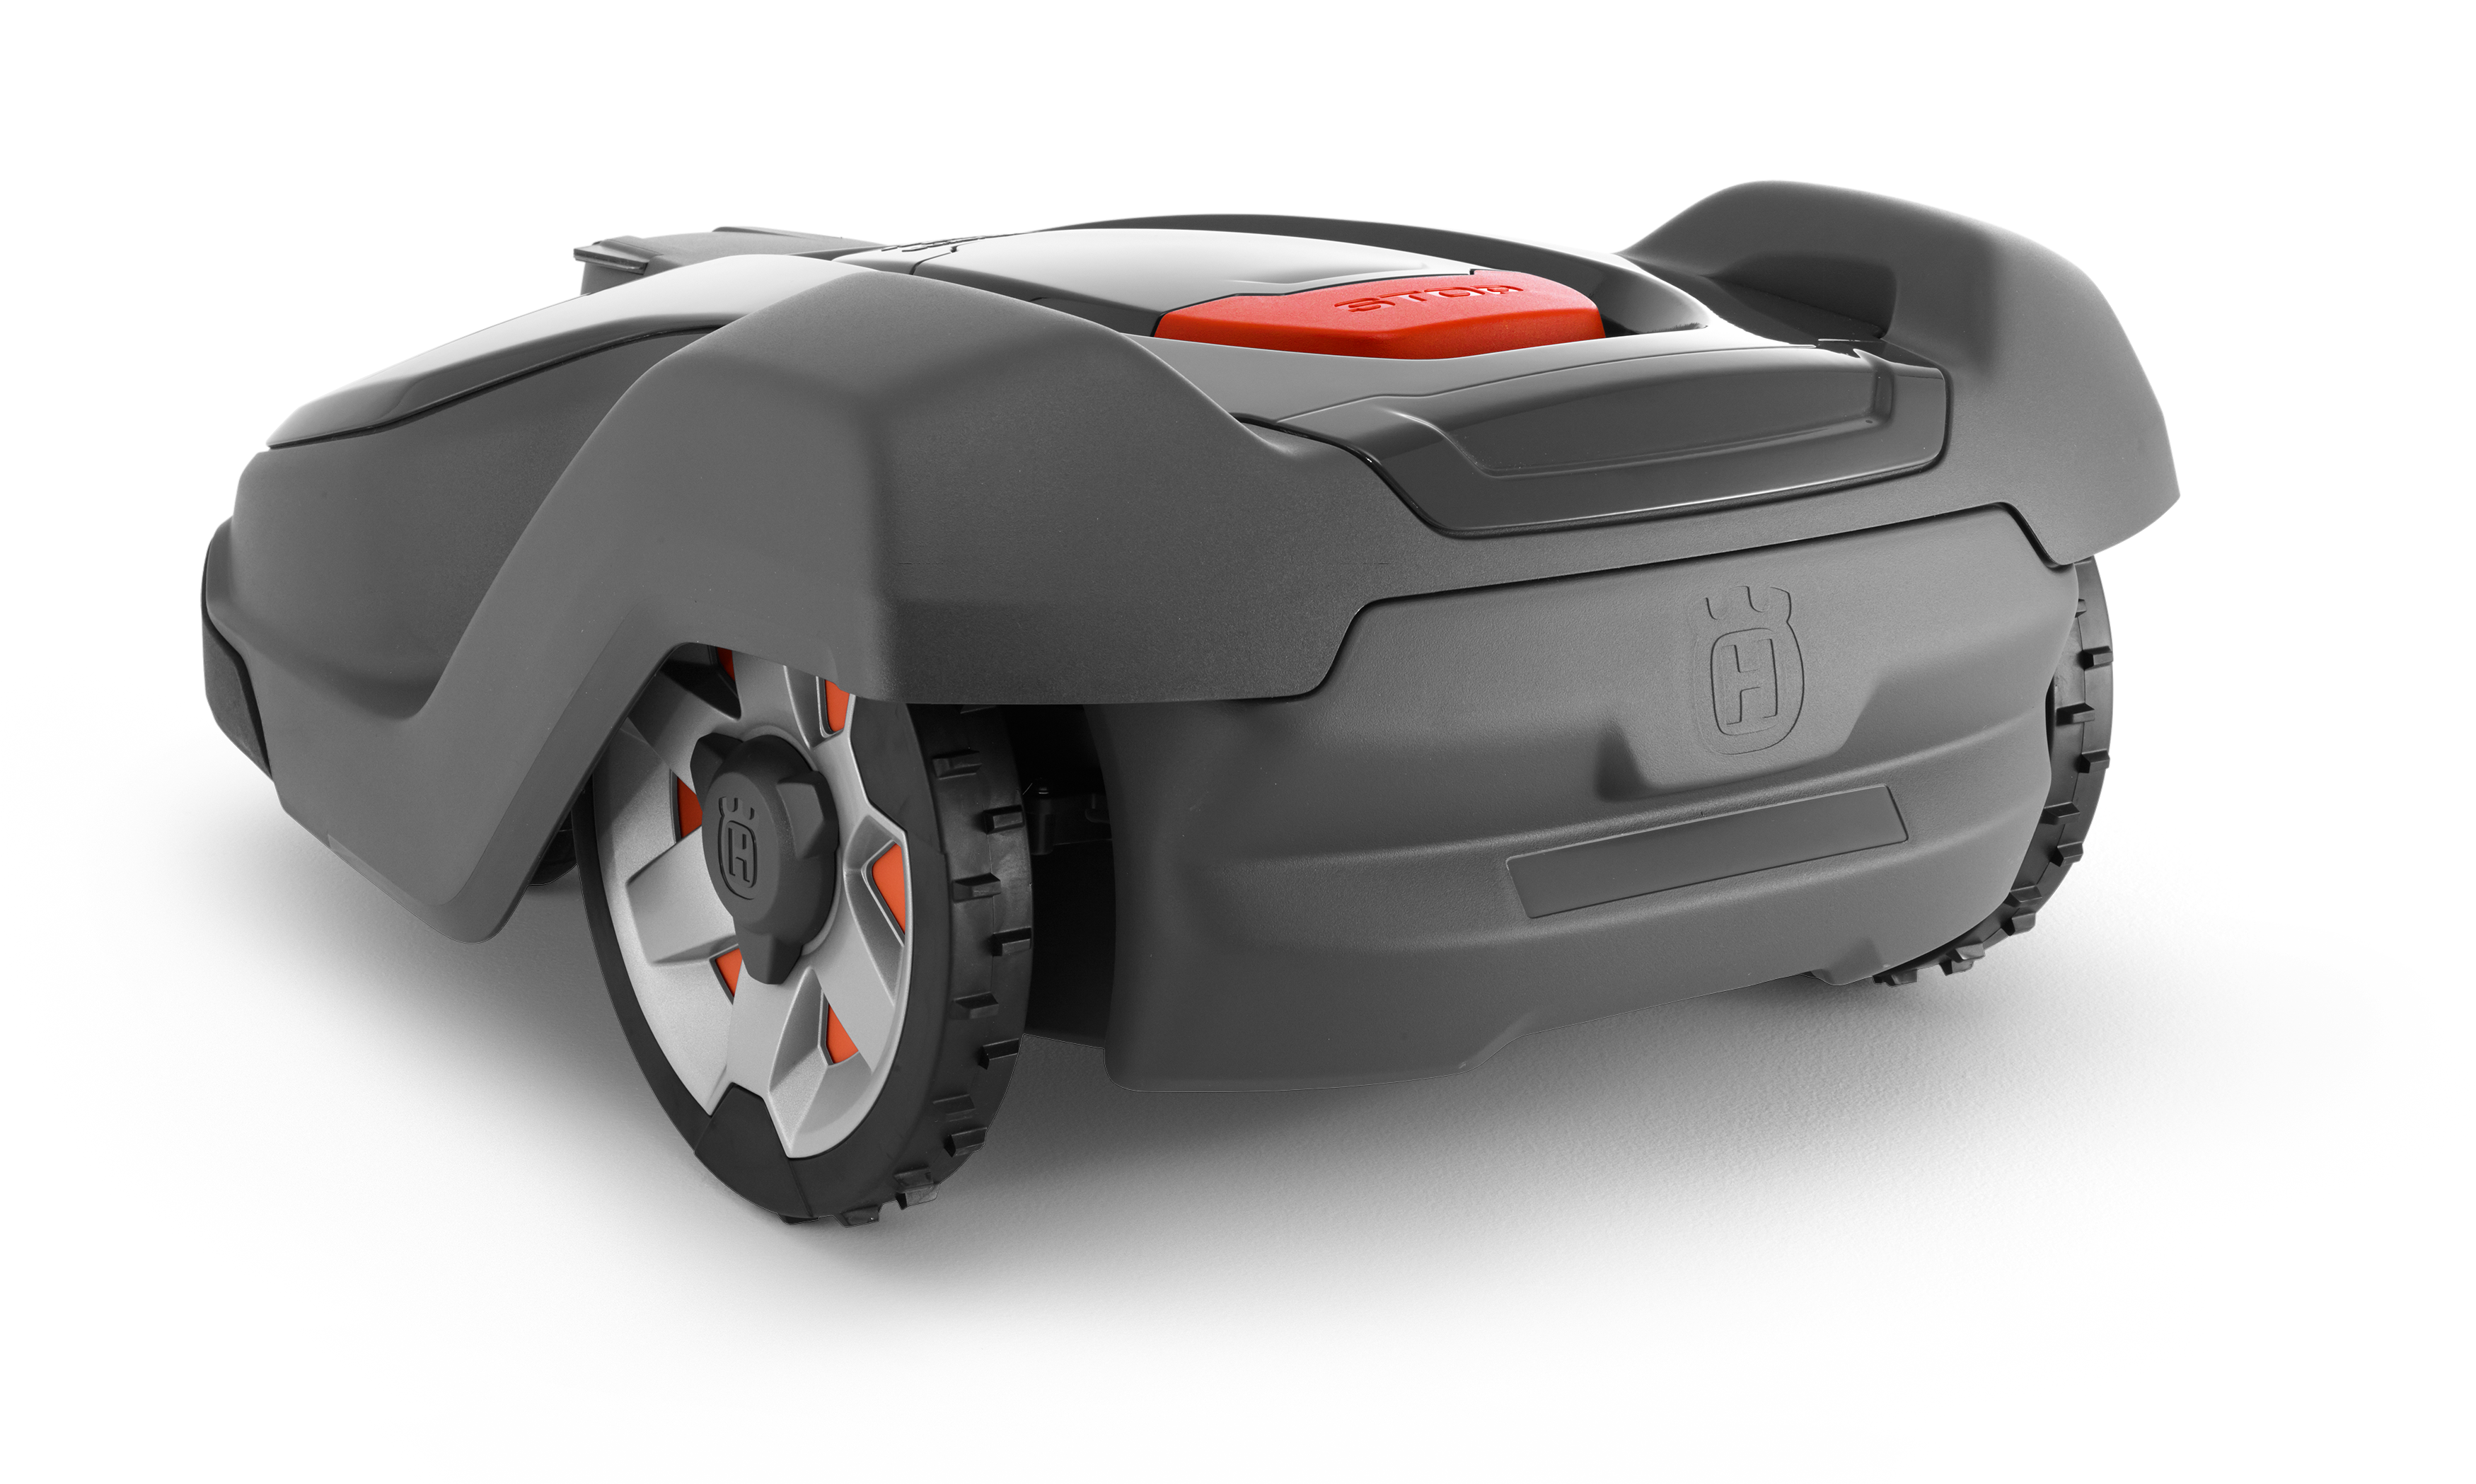 Melns Husqvarna zāles pļāvējs robots – Automower 430X modelis, skats no aizmugures